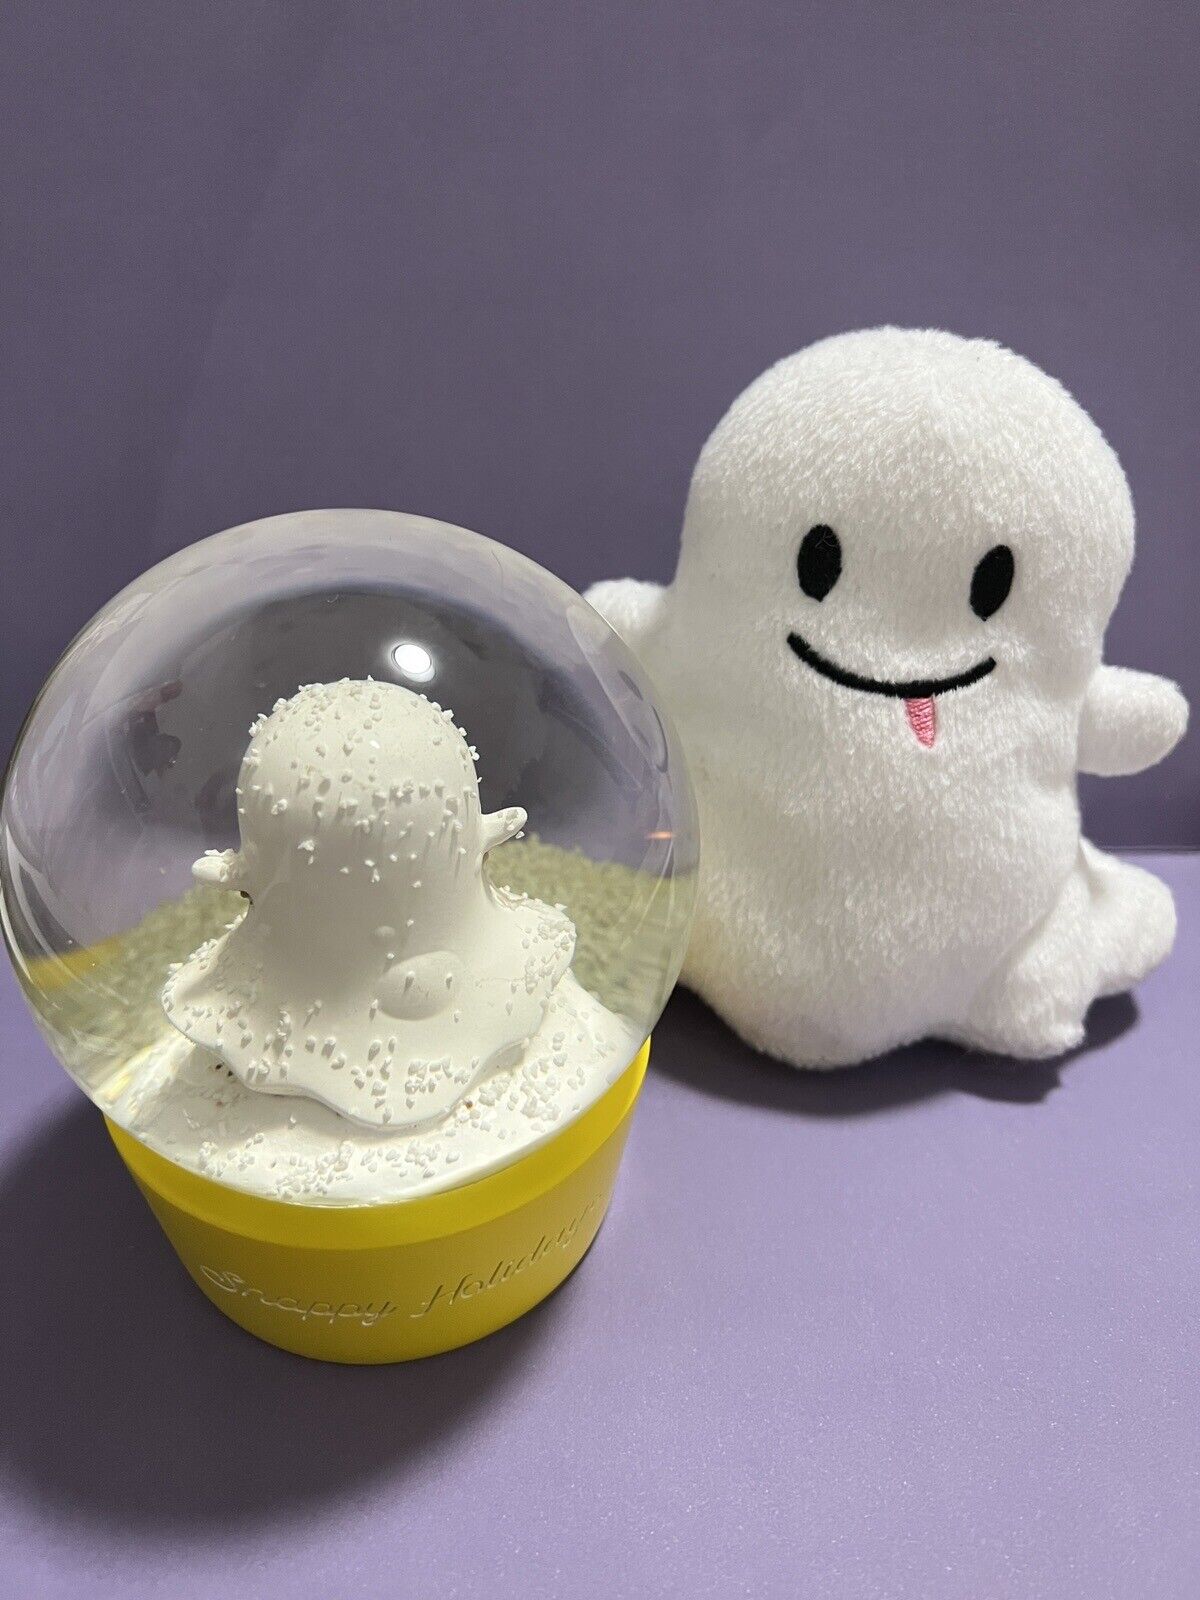 Snapchat Snappy Holidays Snow Globe & Snapchat Ghost Plush Stuffed Toy